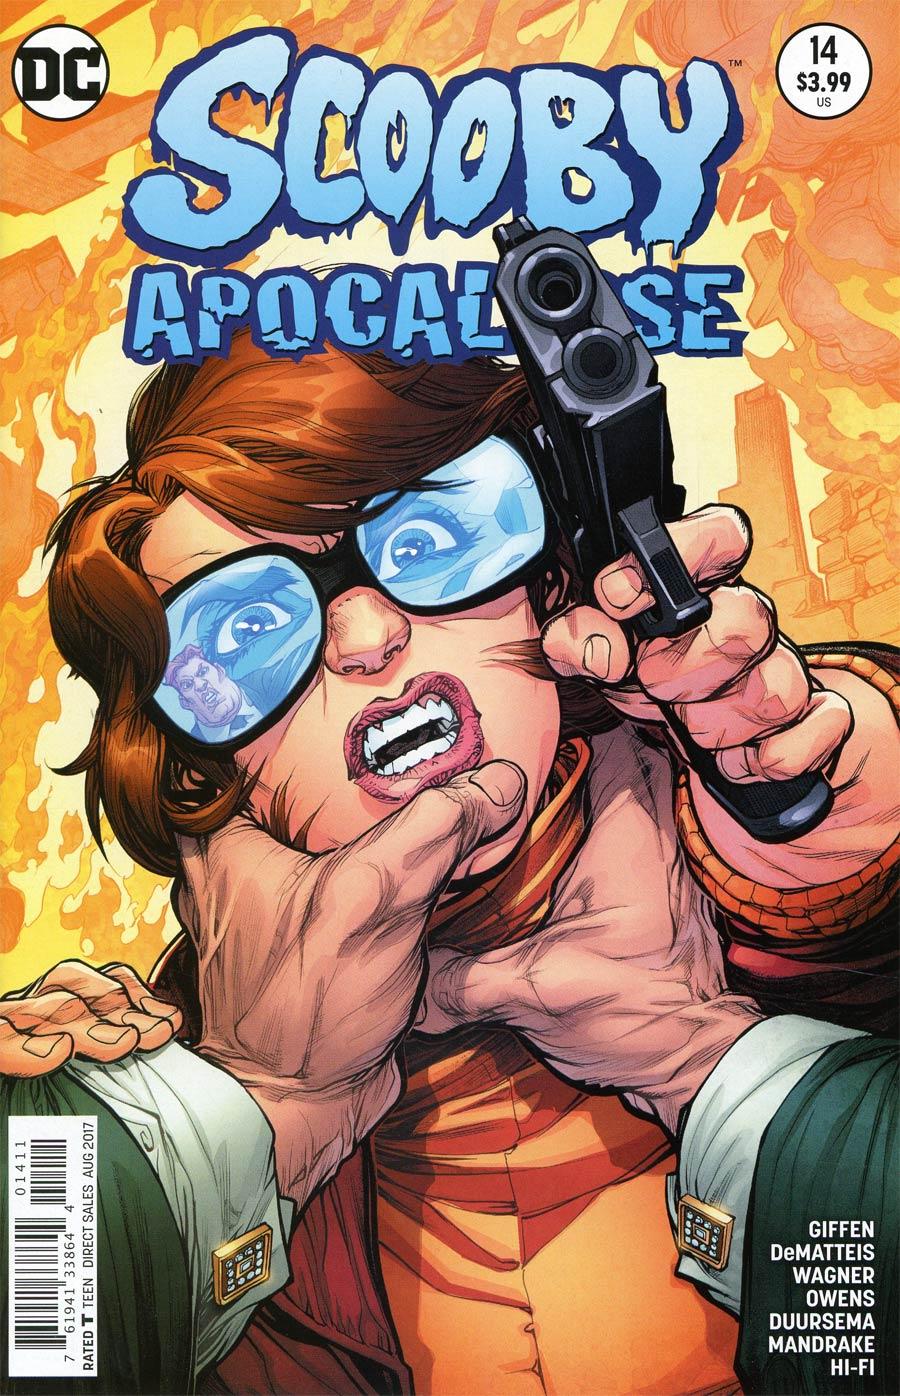 Scooby Apocalypse Vol. 1 #14